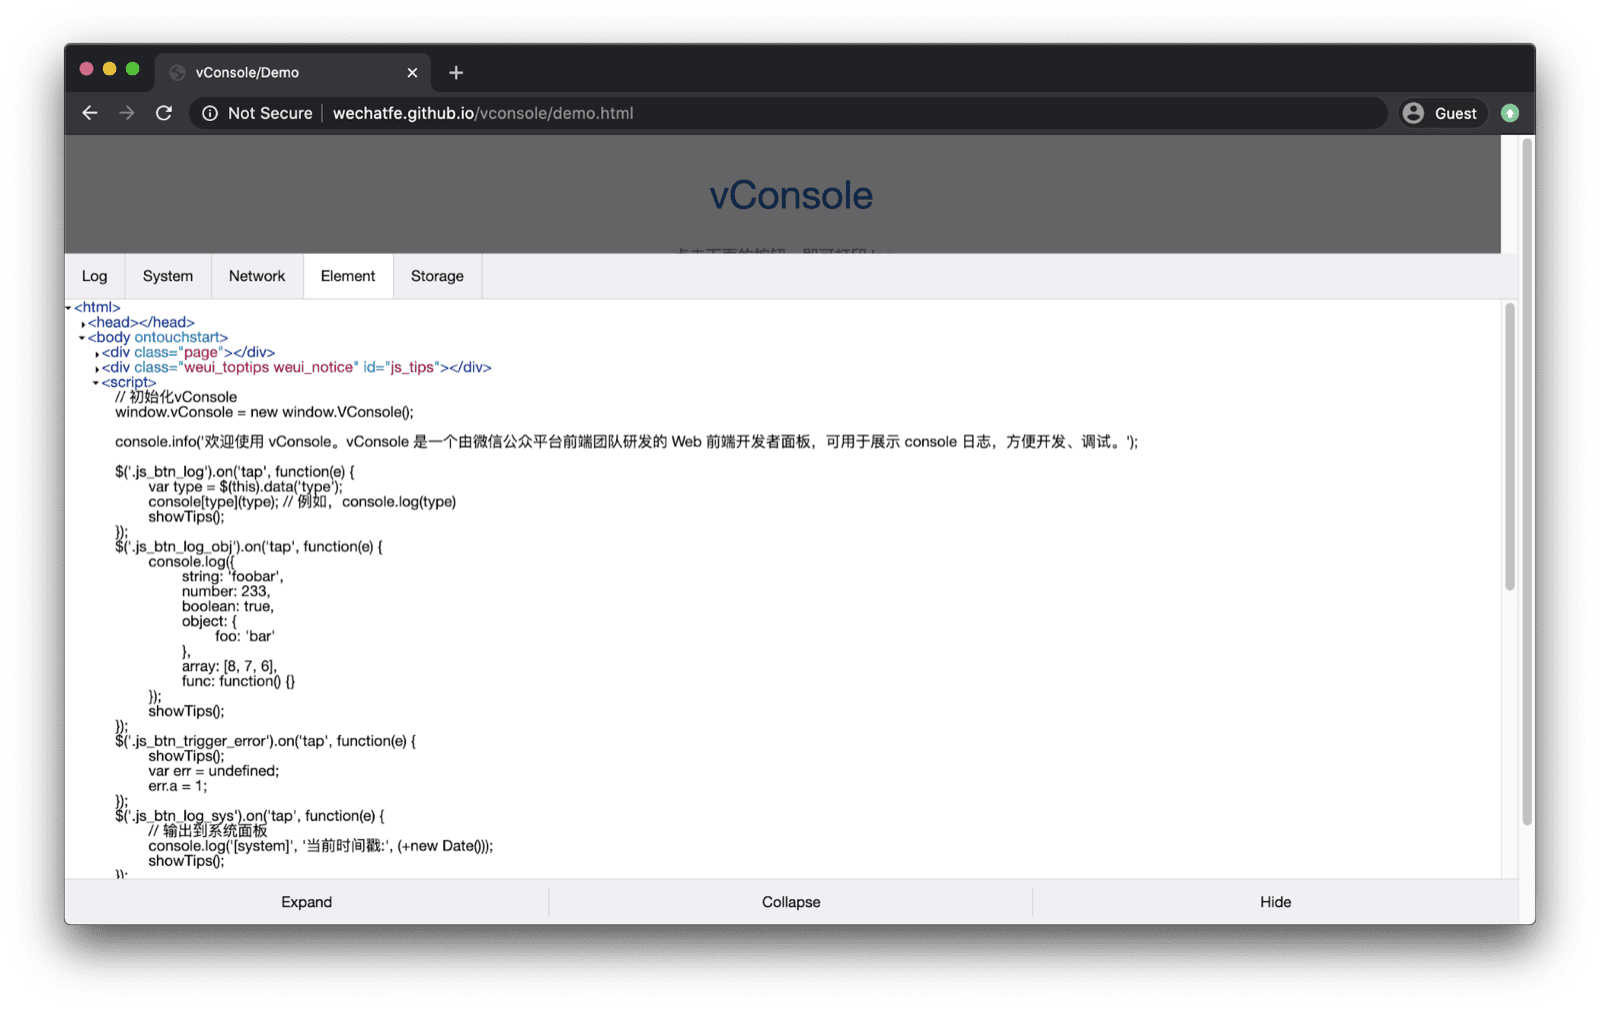 App de demonstração do vConsole: aberto na parte inferior com guias para registros, sistema, rede, elementos e armazenamento.